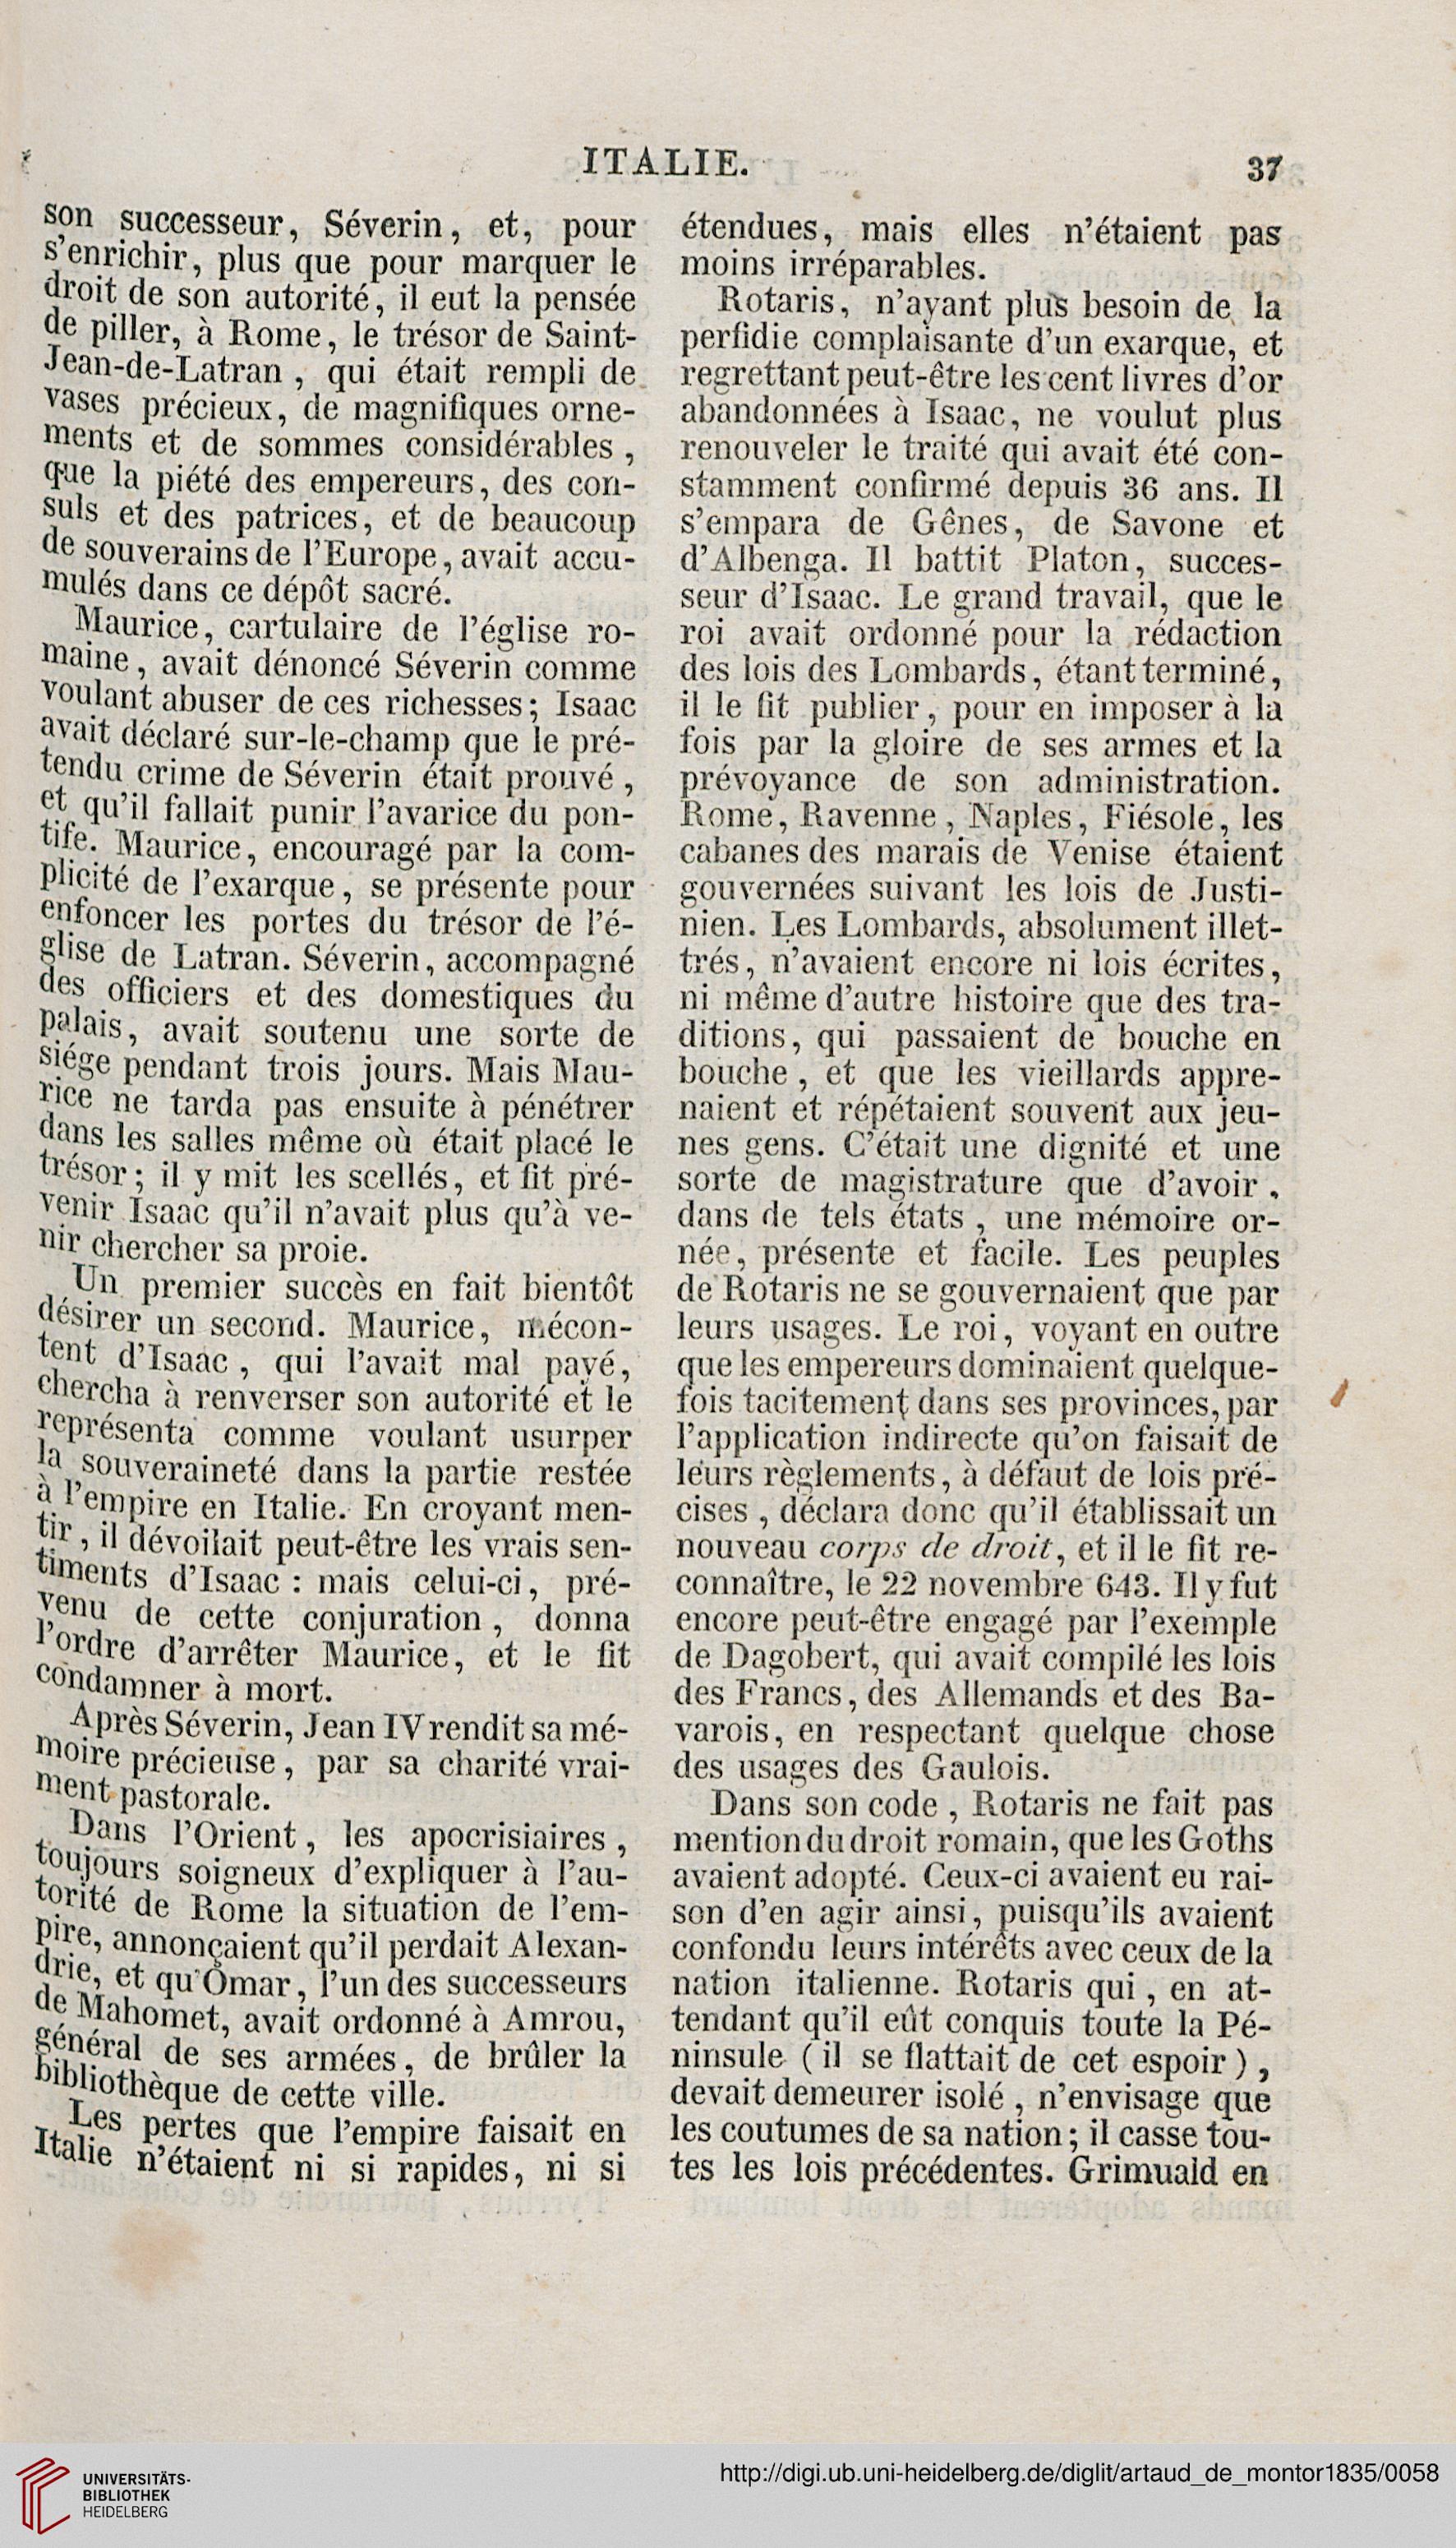 artaud de montor alexis francois gigault de lasalle achille etienne italie paris 1835